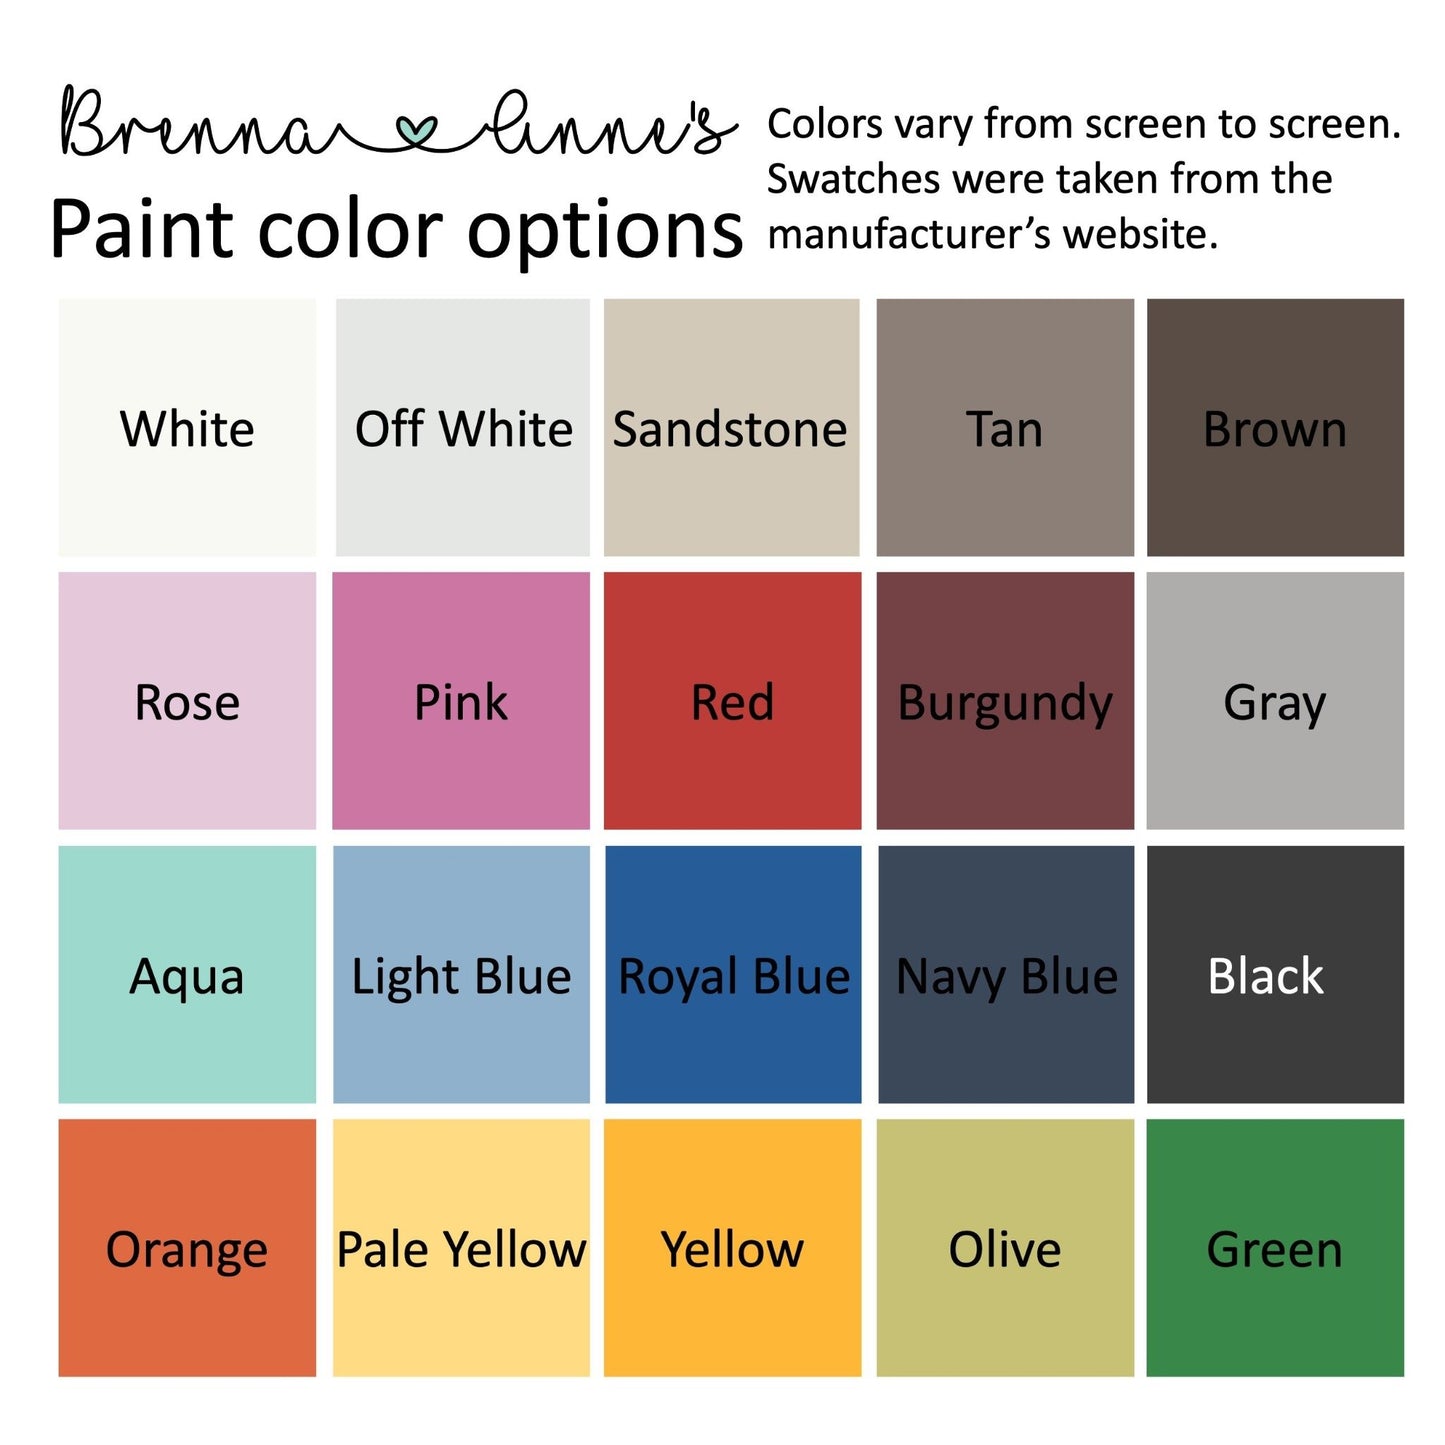 Paint color options